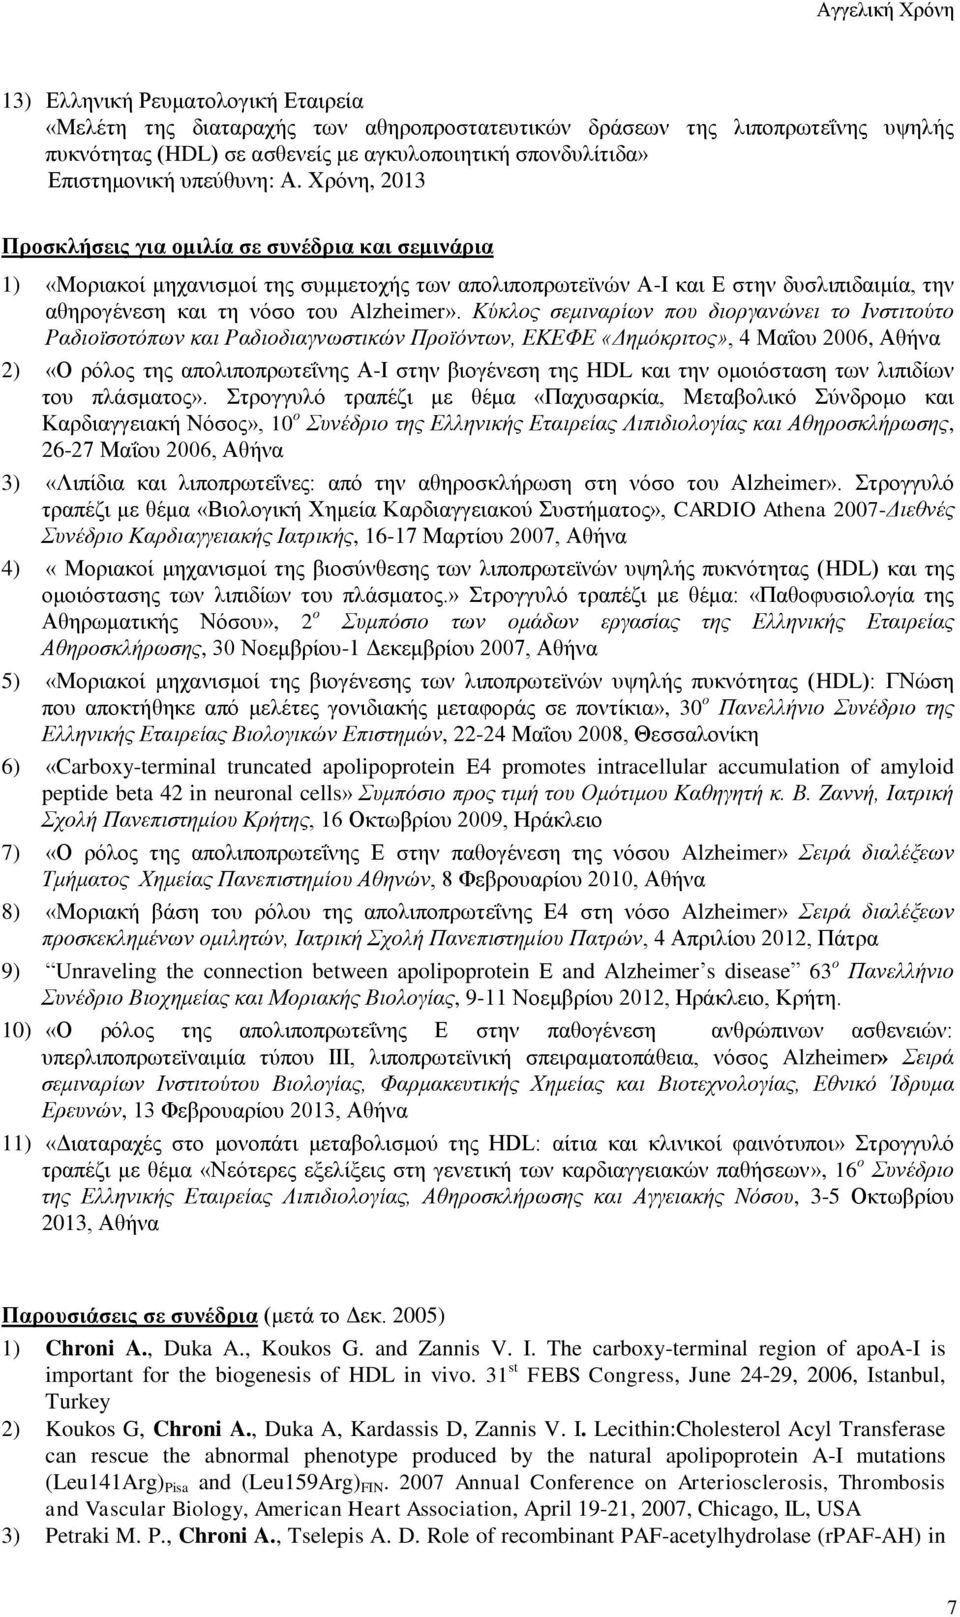 Κύκλος σεμιναρίων που διοργανώνει το Ινστιτούτο Ραδιοϊσοτόπων και Ραδιοδιαγνωστικών Προϊόντων, ΕΚΕΦΕ «Δημόκριτος», 4 Μαΐου 2006, Αθήνα 2) «Ο ρόλος της απολιποπρωτεΐνης Α-Ι στην βιογένεση της HDL και